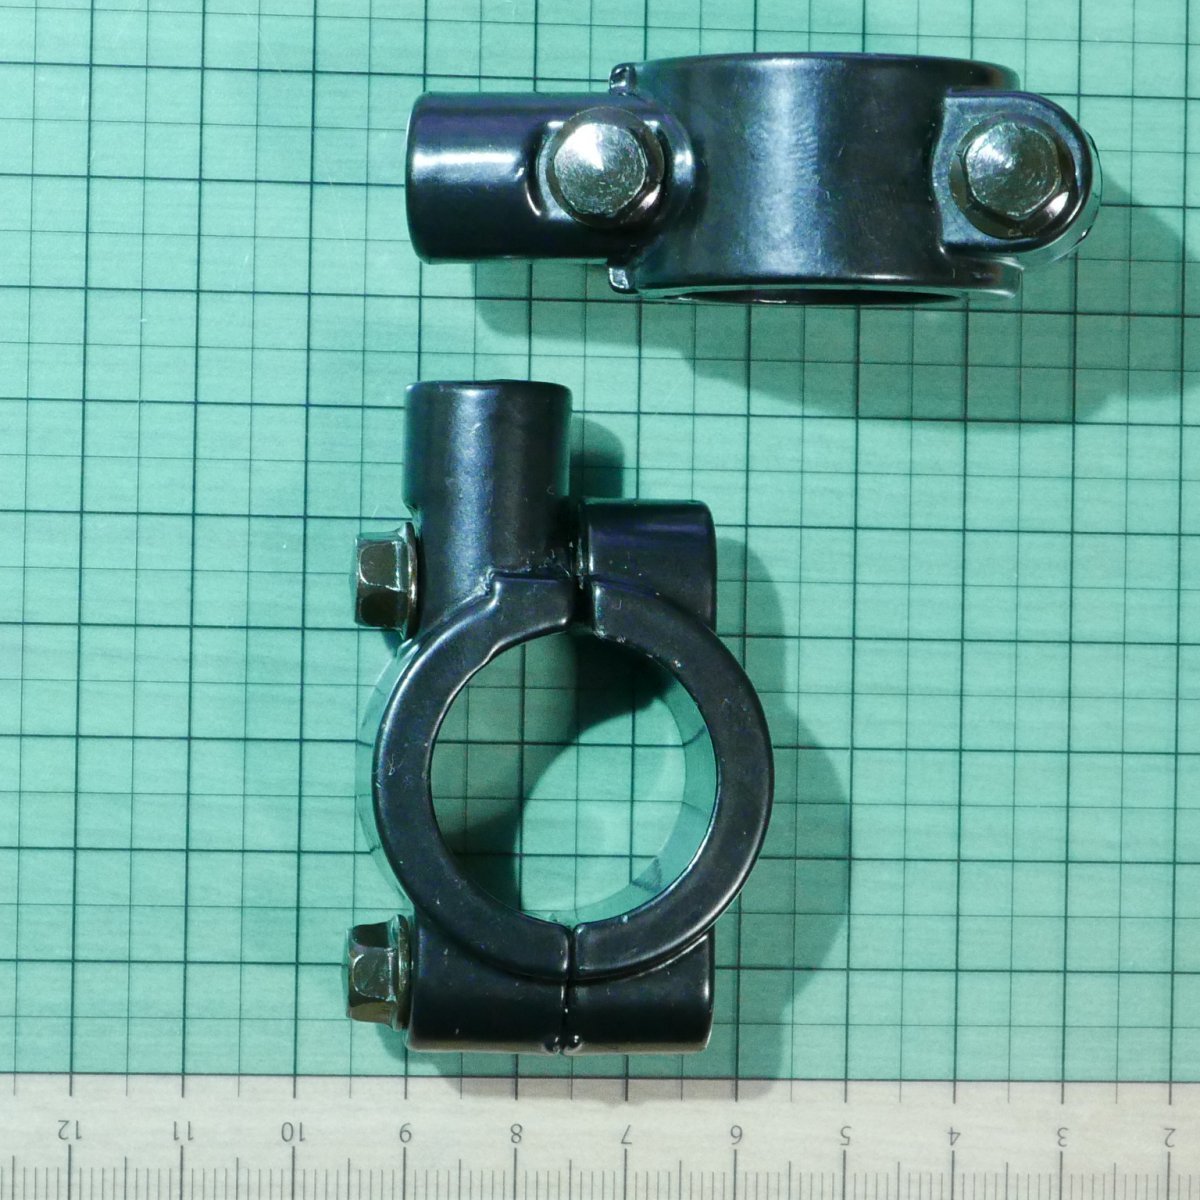 1インチ(25mm)ハンドル用 M10正ネジ対応 黒 アルミ製ミラークランプ 2個セット (ブラック ミラーホルダーマウント)_画像3